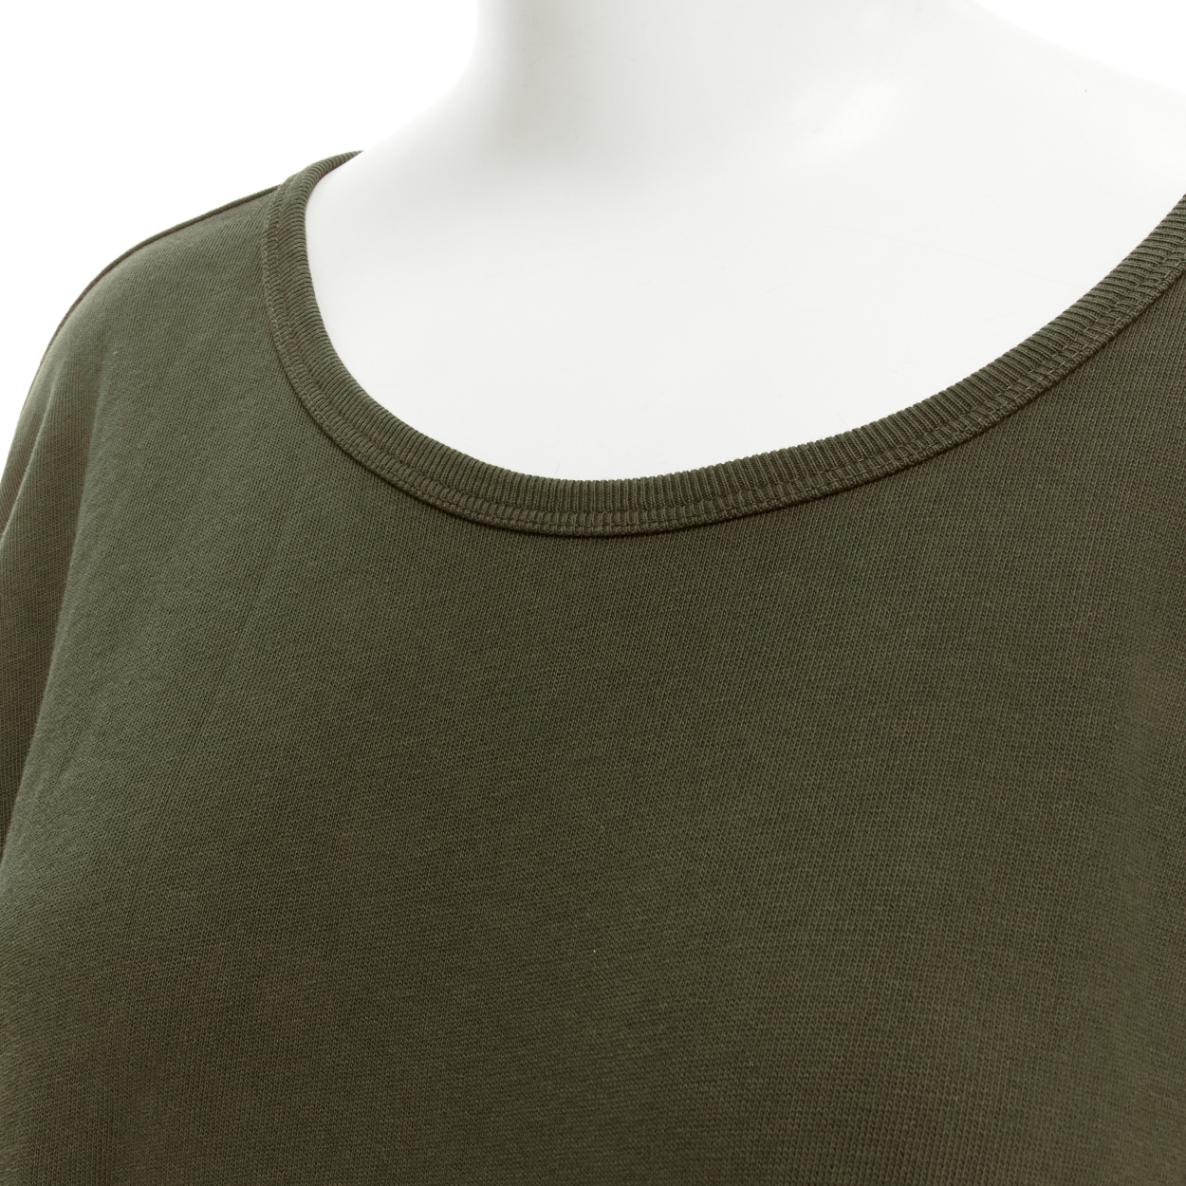 DRIES VAN NOTEN brown cotton silver zip detail sweater top M For Sale 3